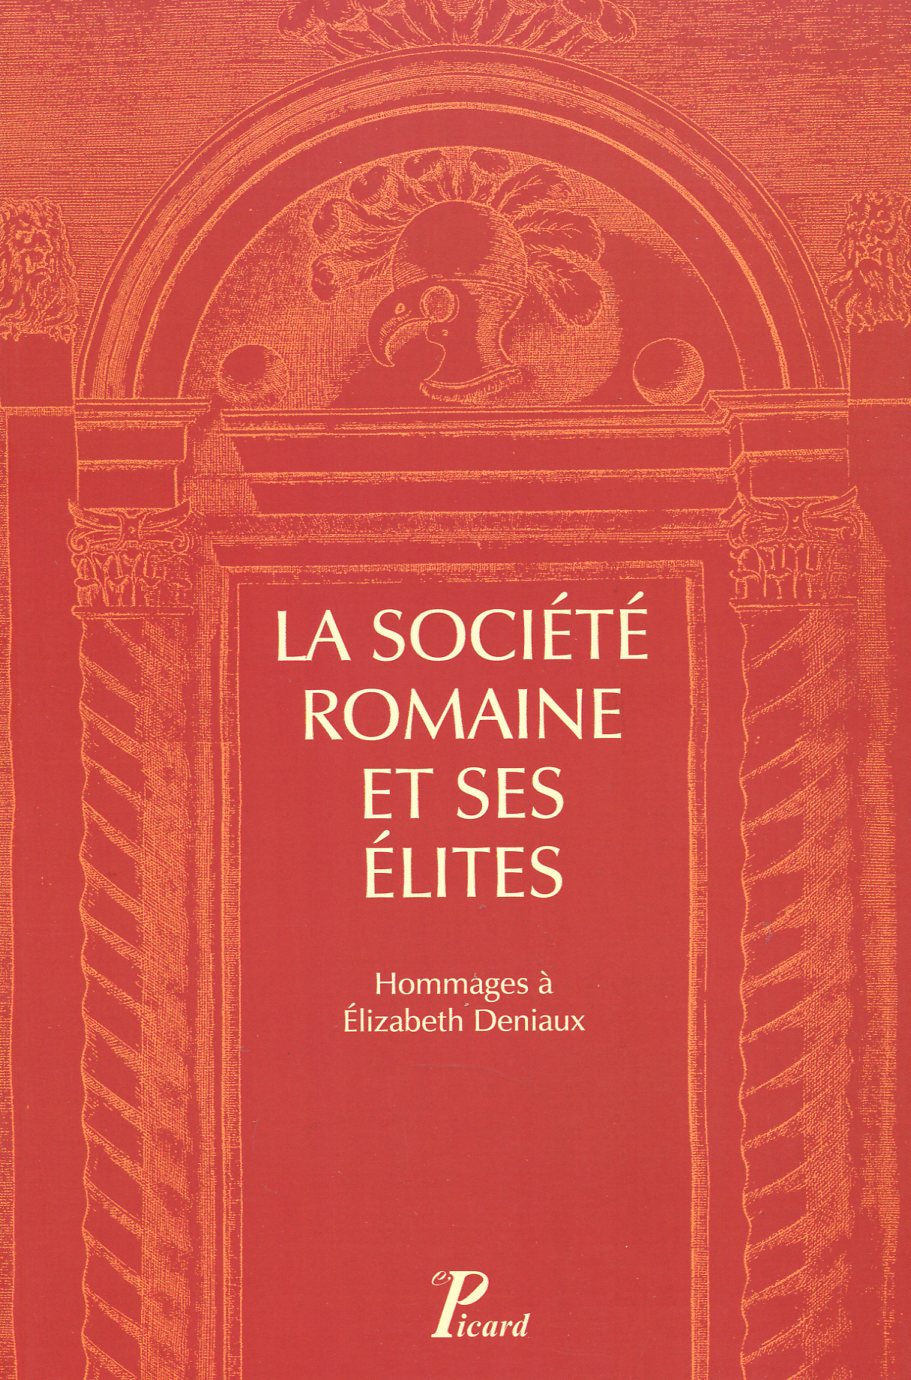 La société romaine et ses élites, 2012, 391 p.